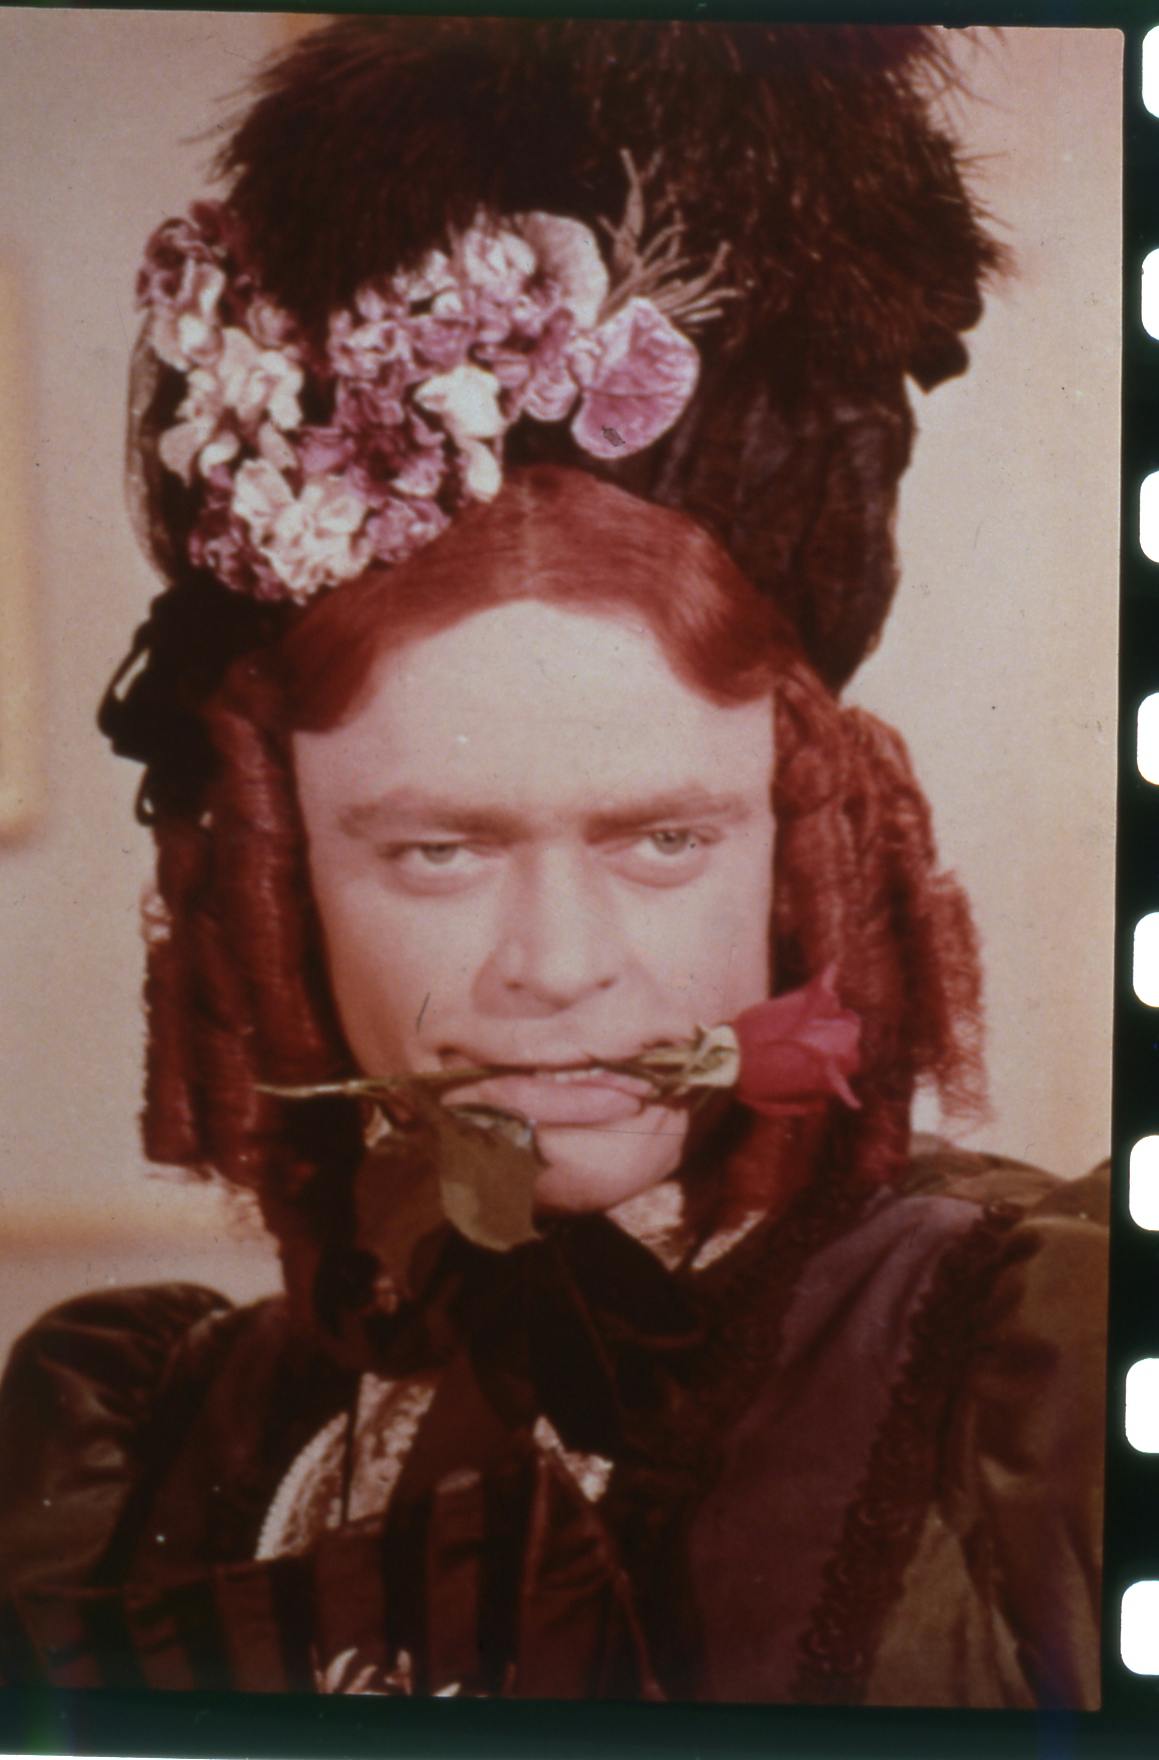 Dirch Passer i rollen som Ditlev klædt ud som Charles’ tante, Donna Lucia d’Alvadorez, i filmen "Charles tante".